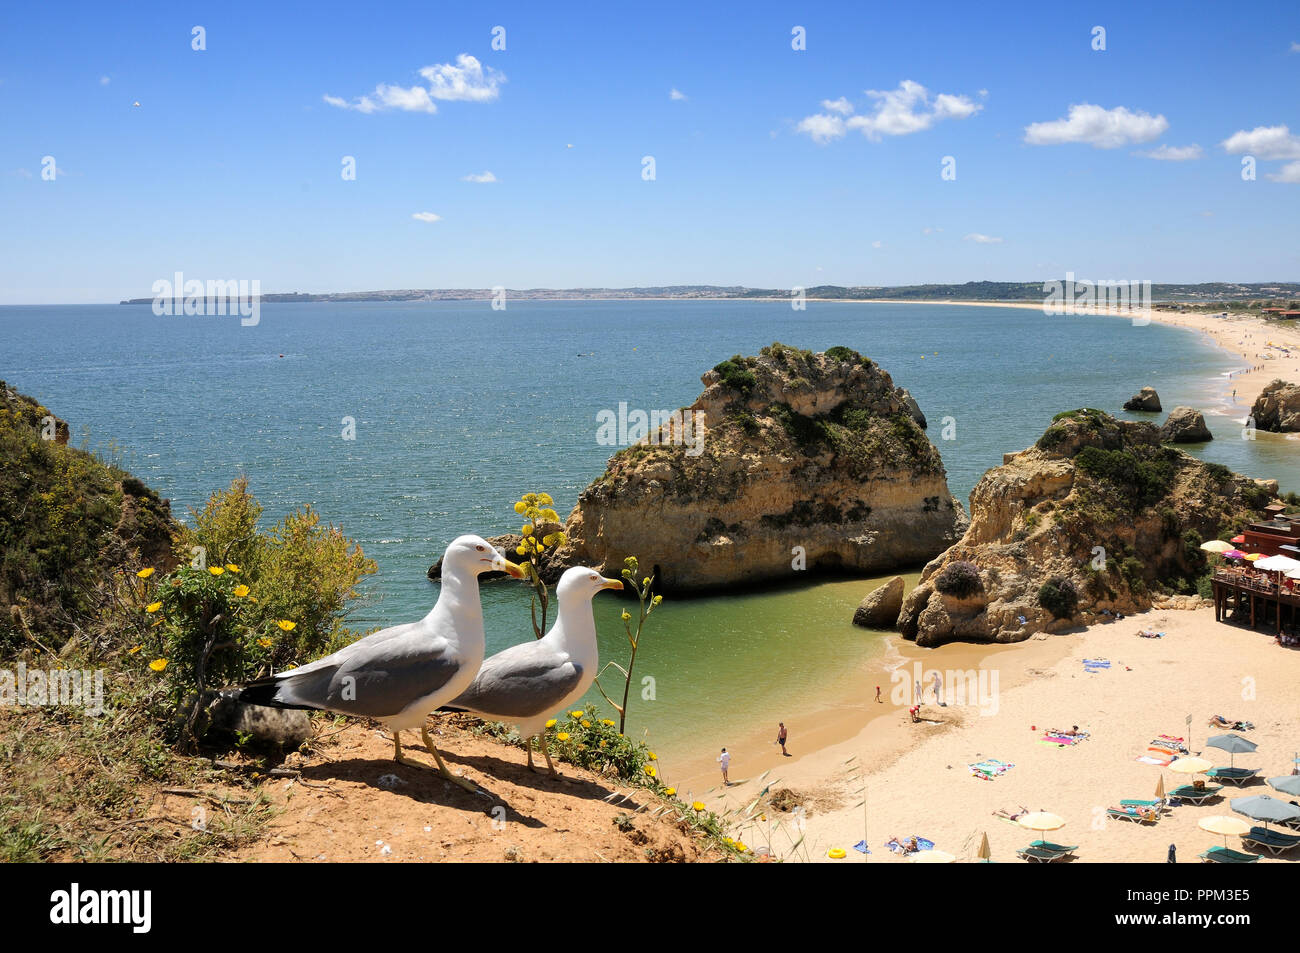 Praia dos Três Irmãos and seagulls, Algarve, Portugal Stock Photo